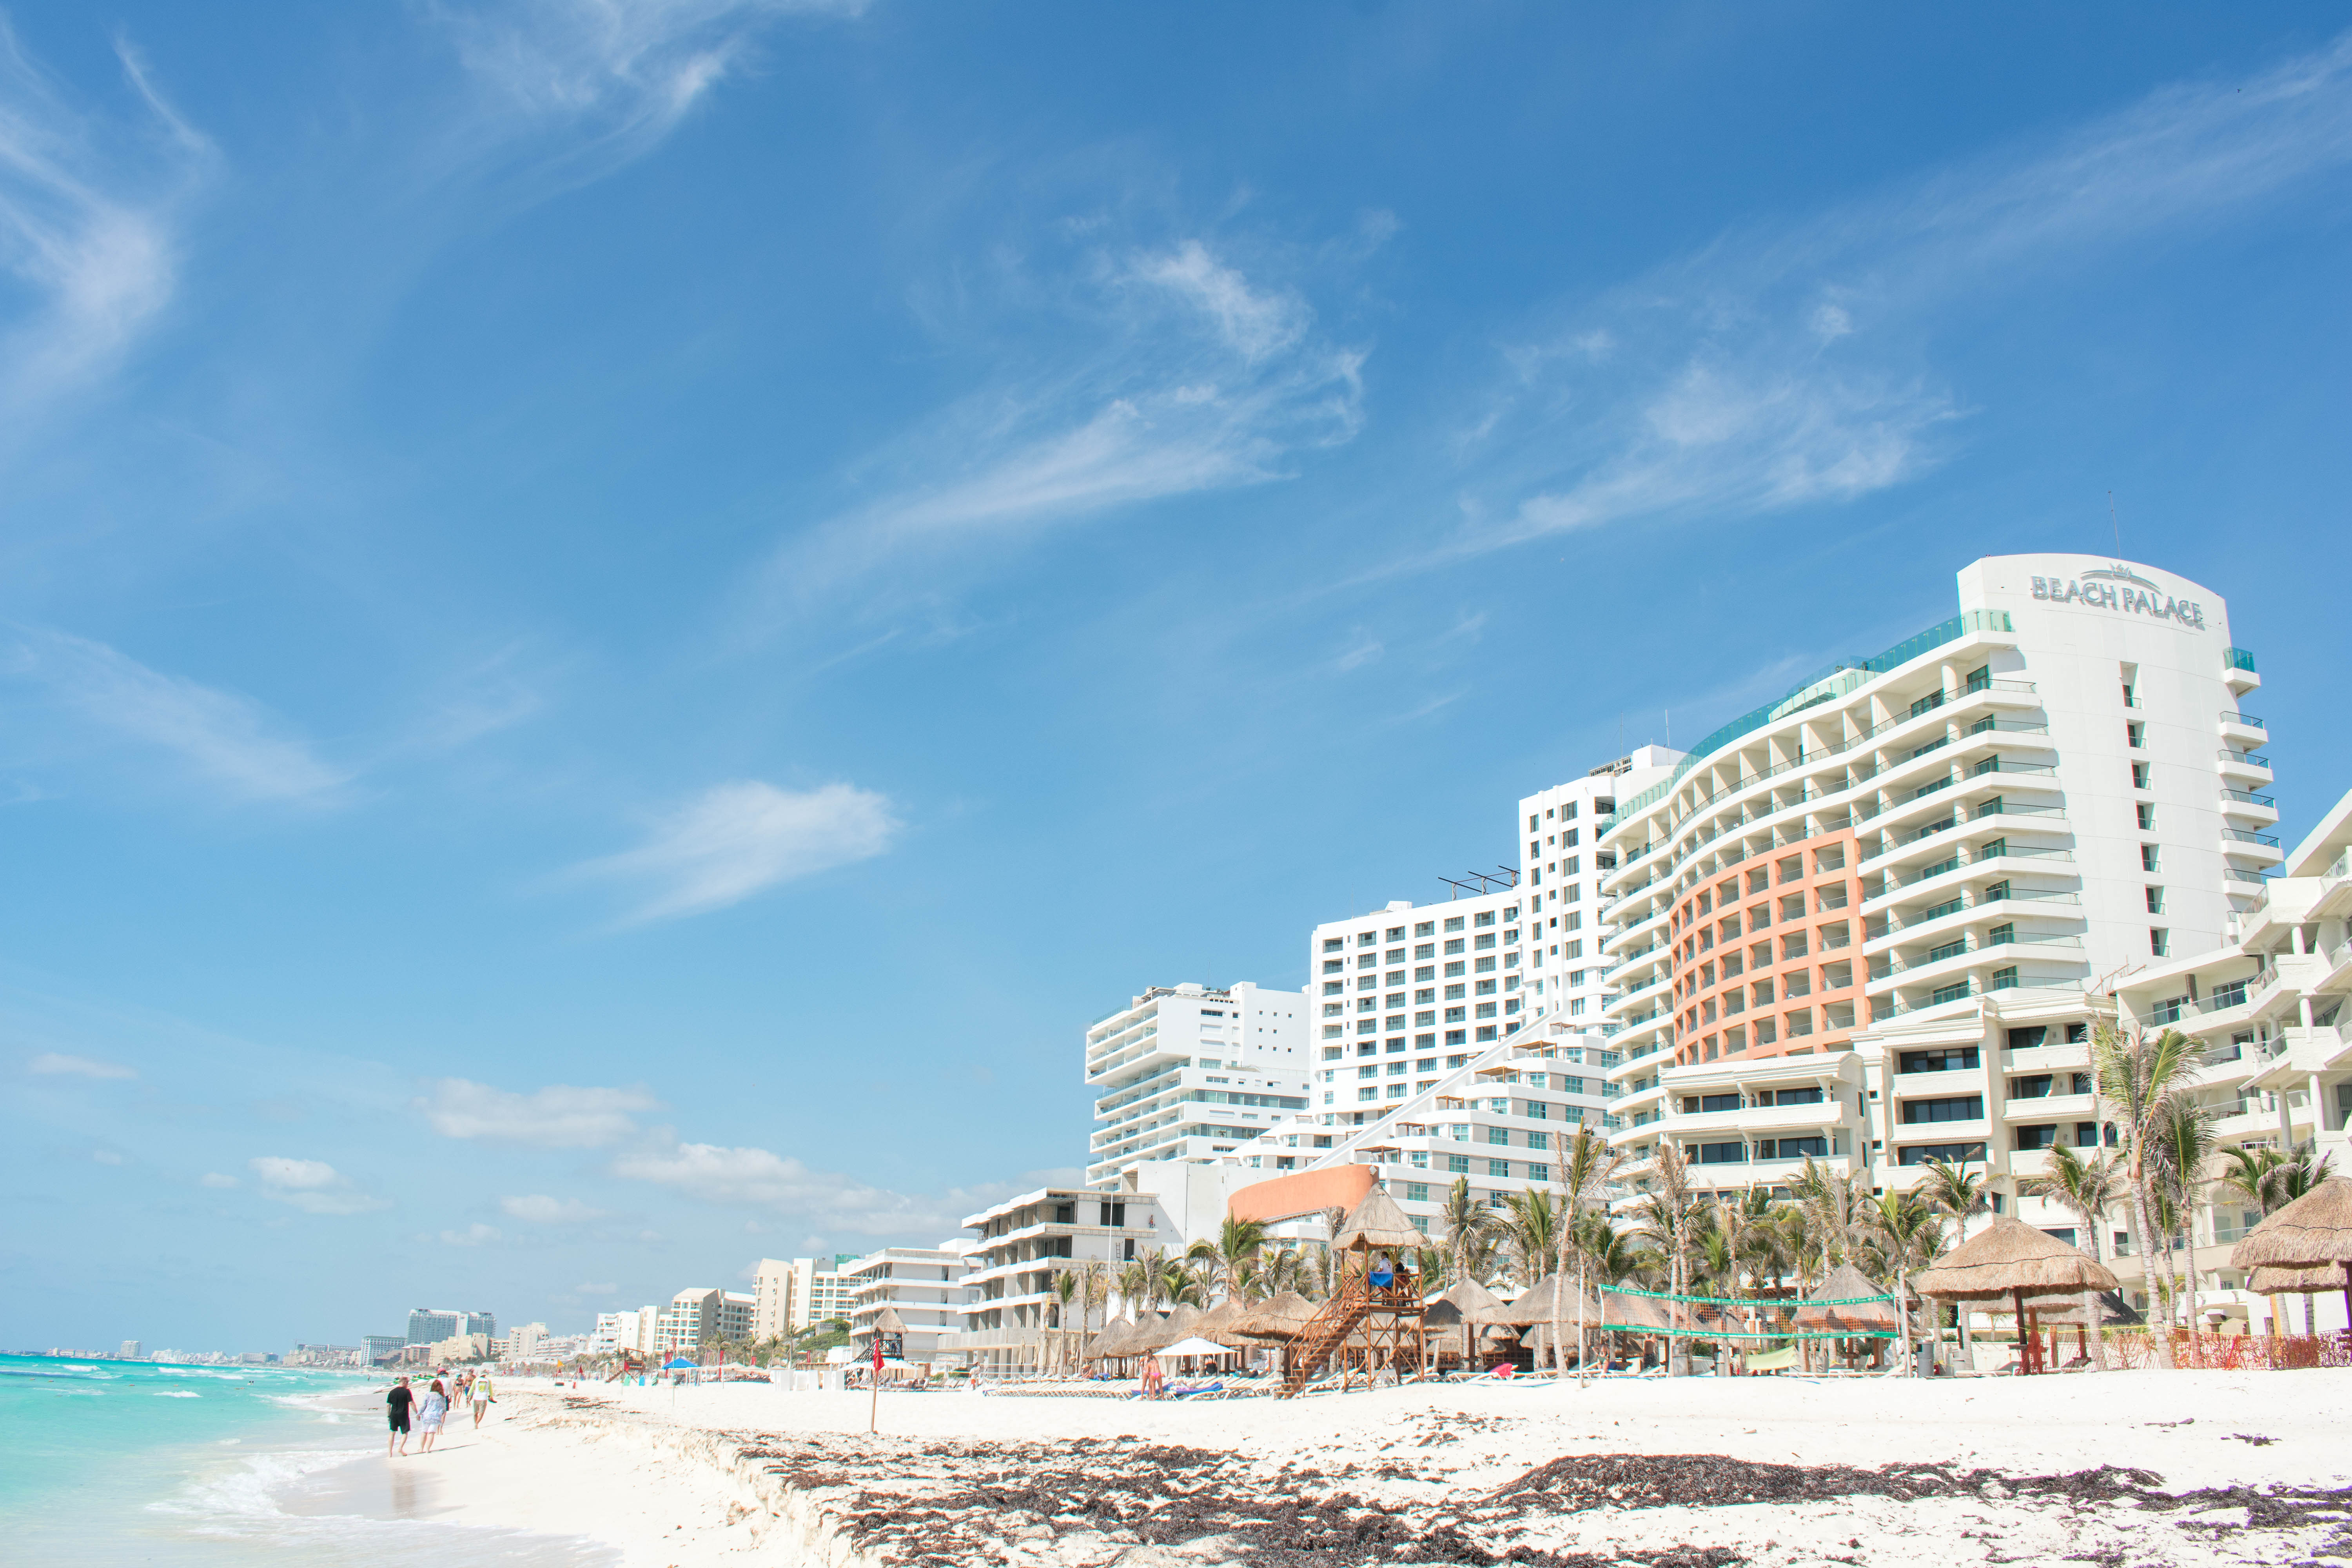 Hotel Zone - All Inclusive Hotels in Cancun